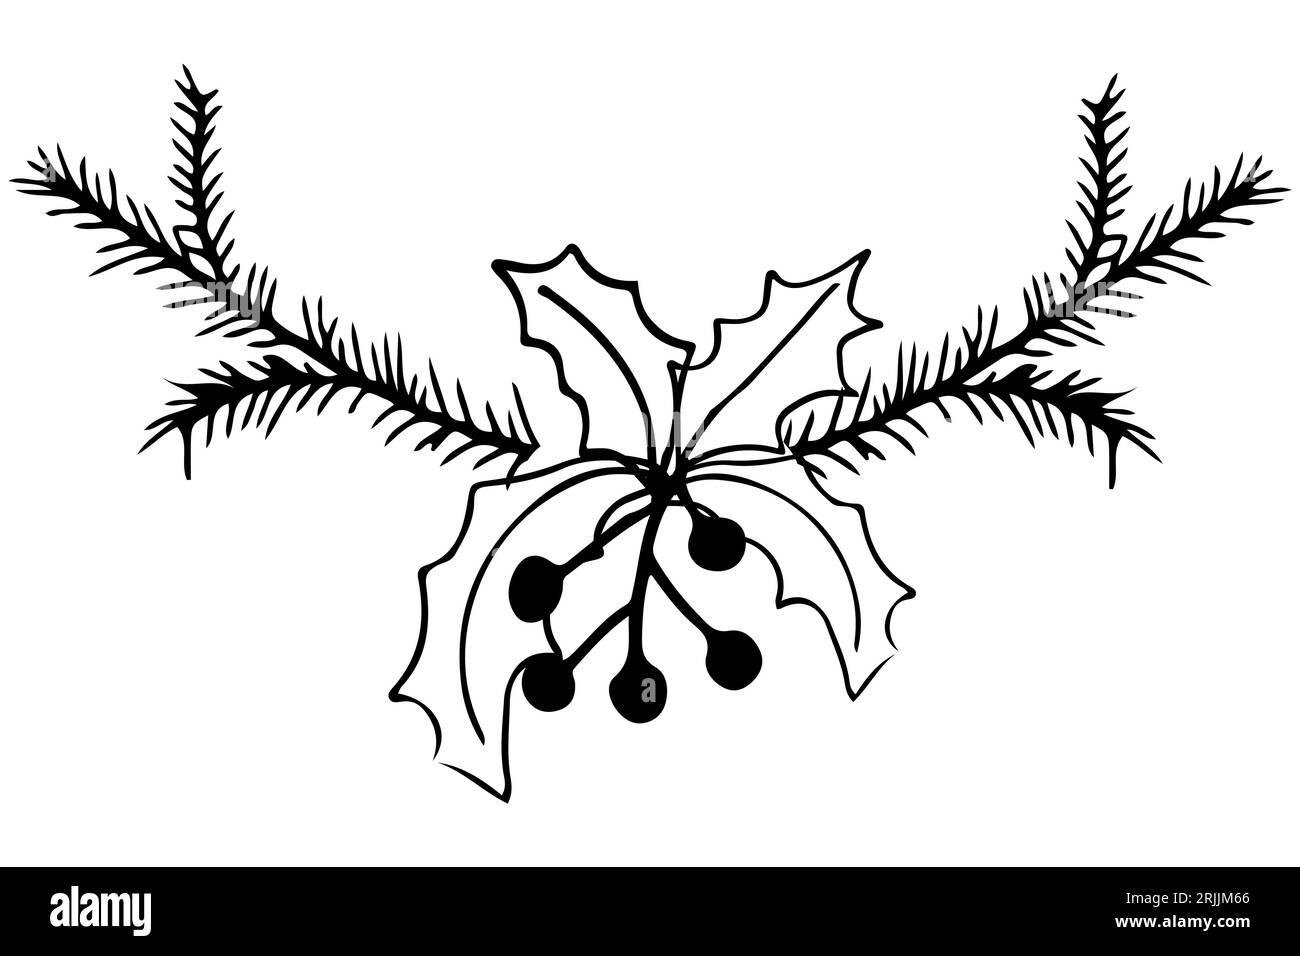 Struttura a ramo di pino con Mistletoe e bacche in stile doodle isolate su sfondo bianco. Bordo carino, design semplice. Illustrazione vettoriale Illustrazione Vettoriale